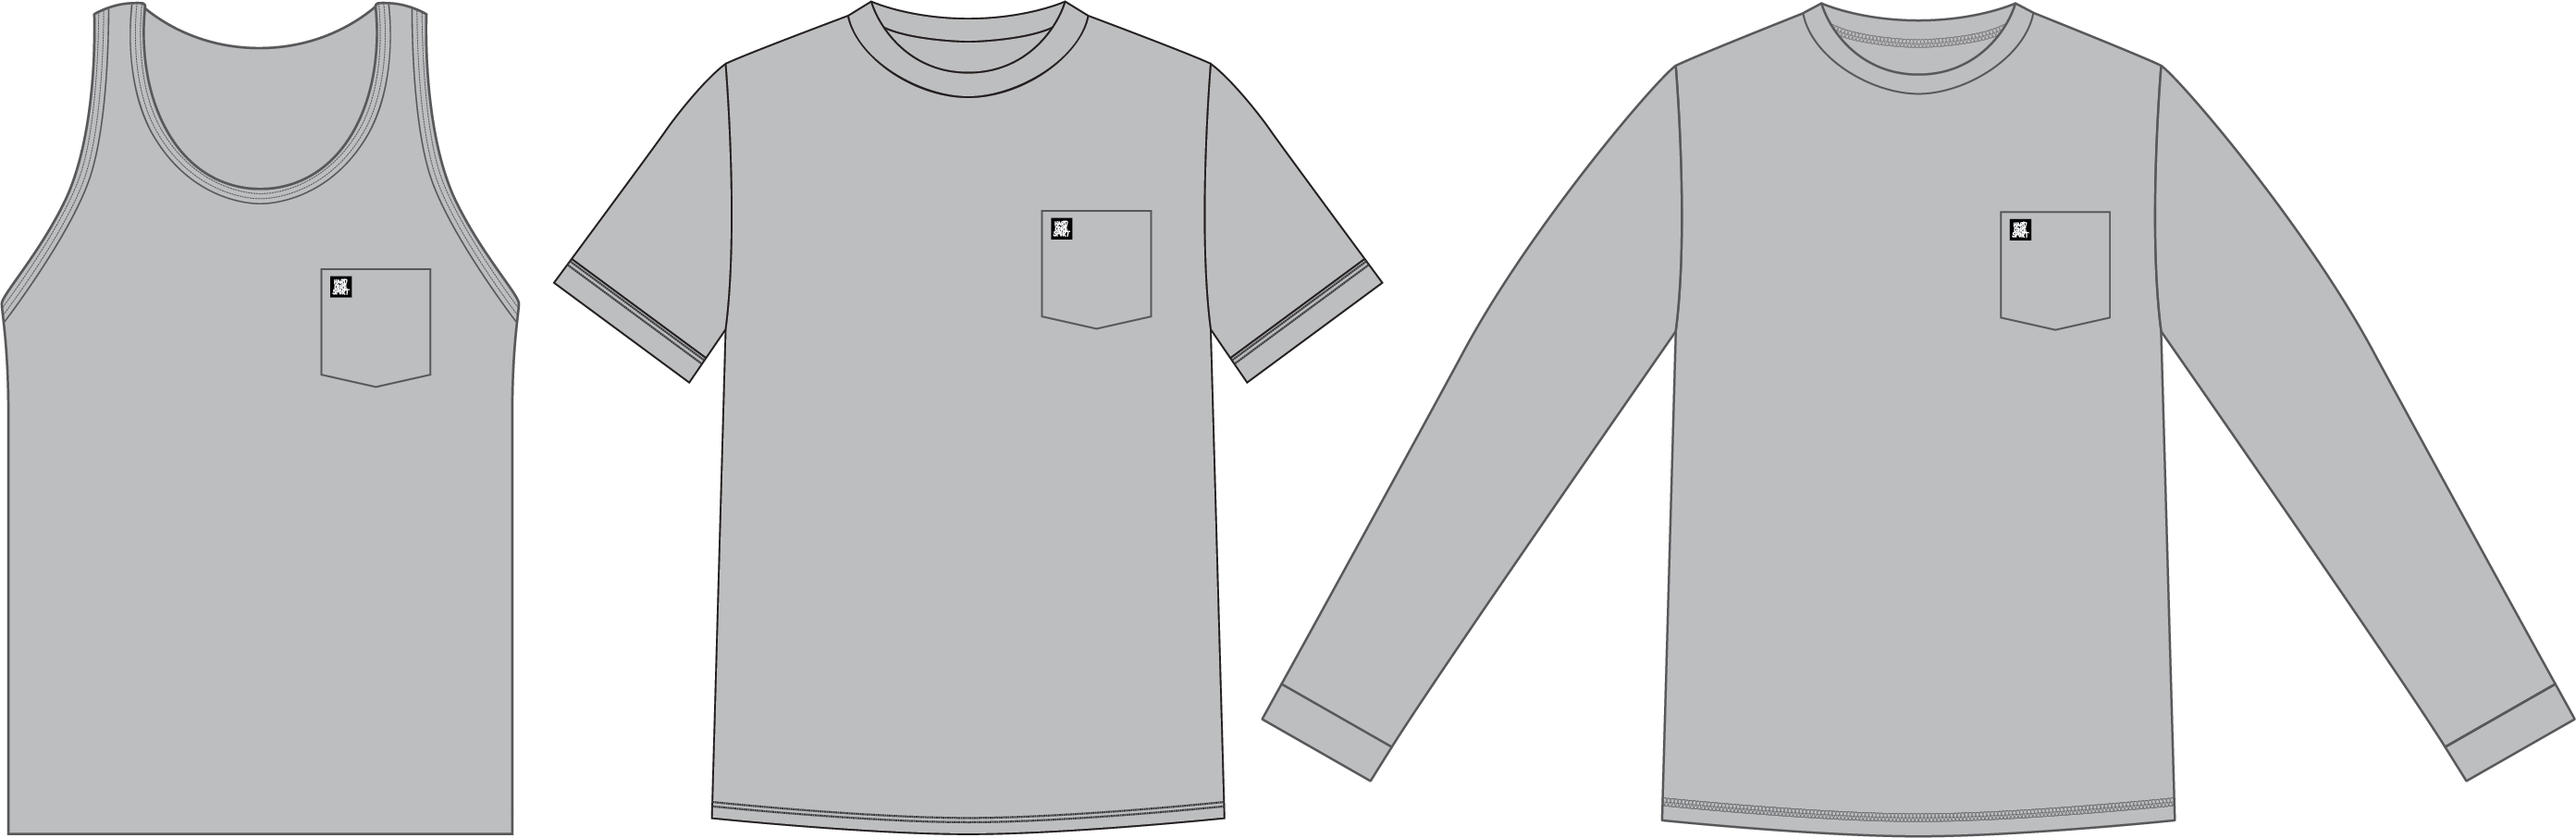 Unisex Pocket Shirts